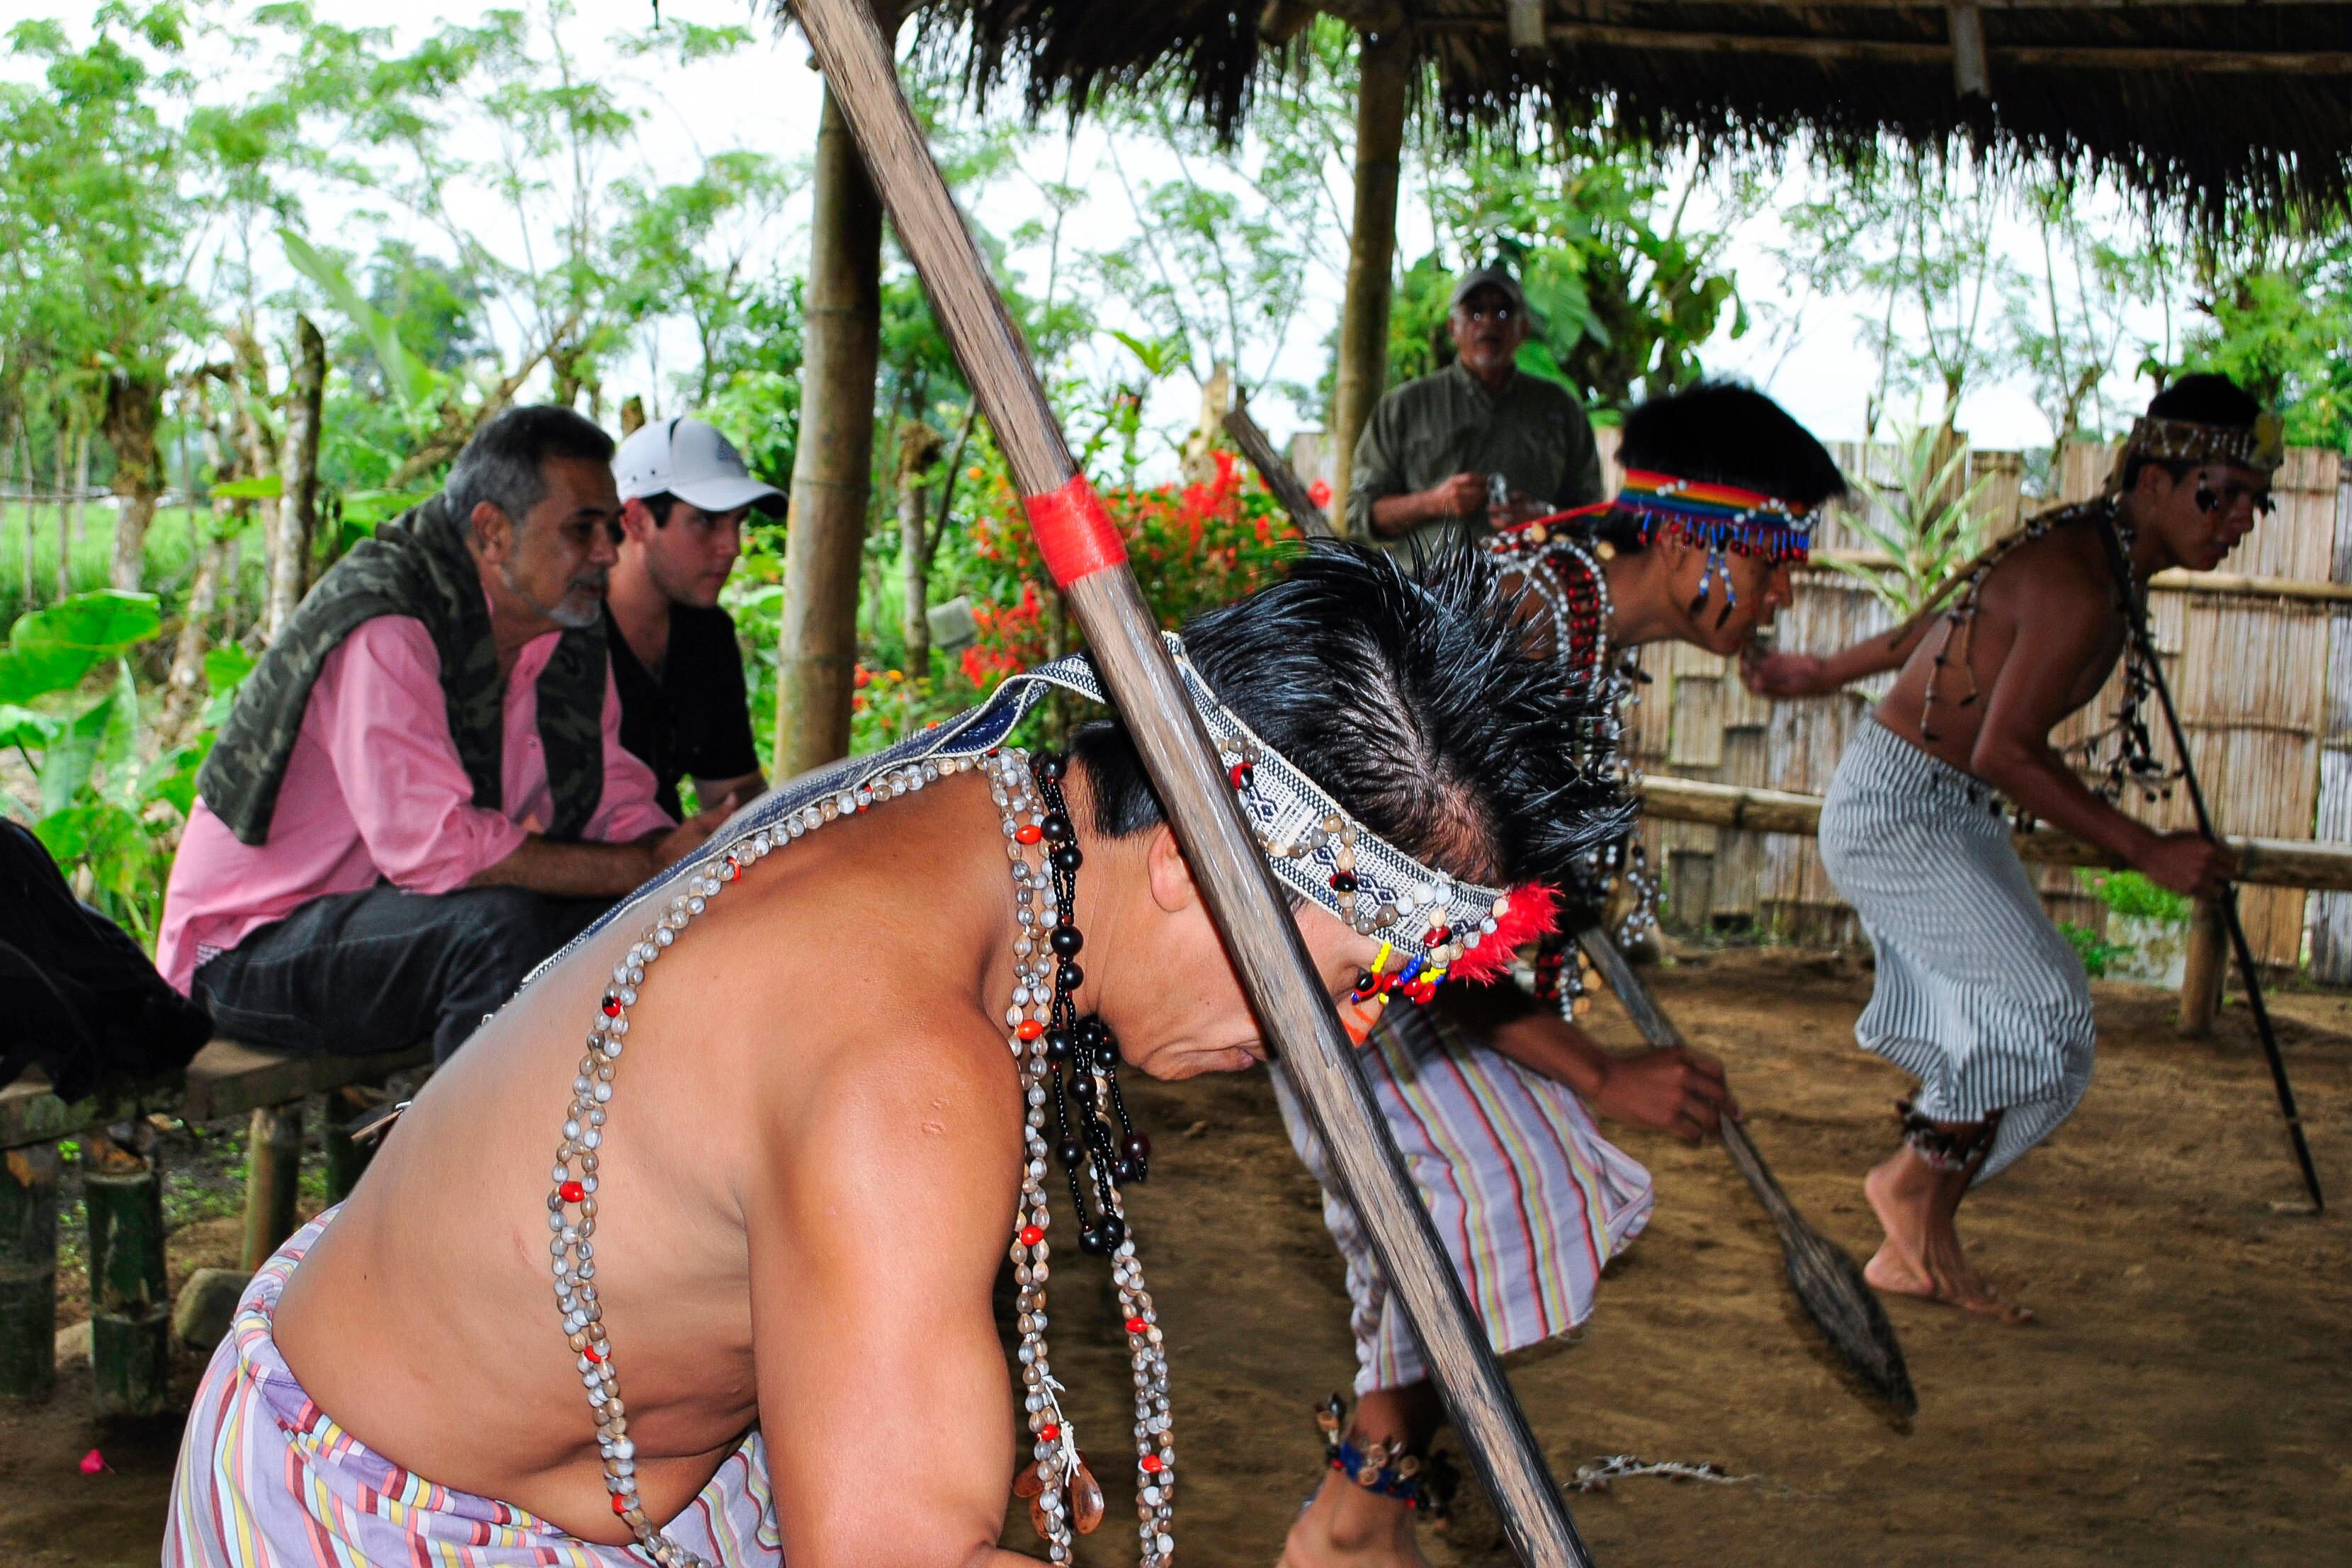 Un grupo de turistas contempla una danza tradicional en un poblado de indios shuar.